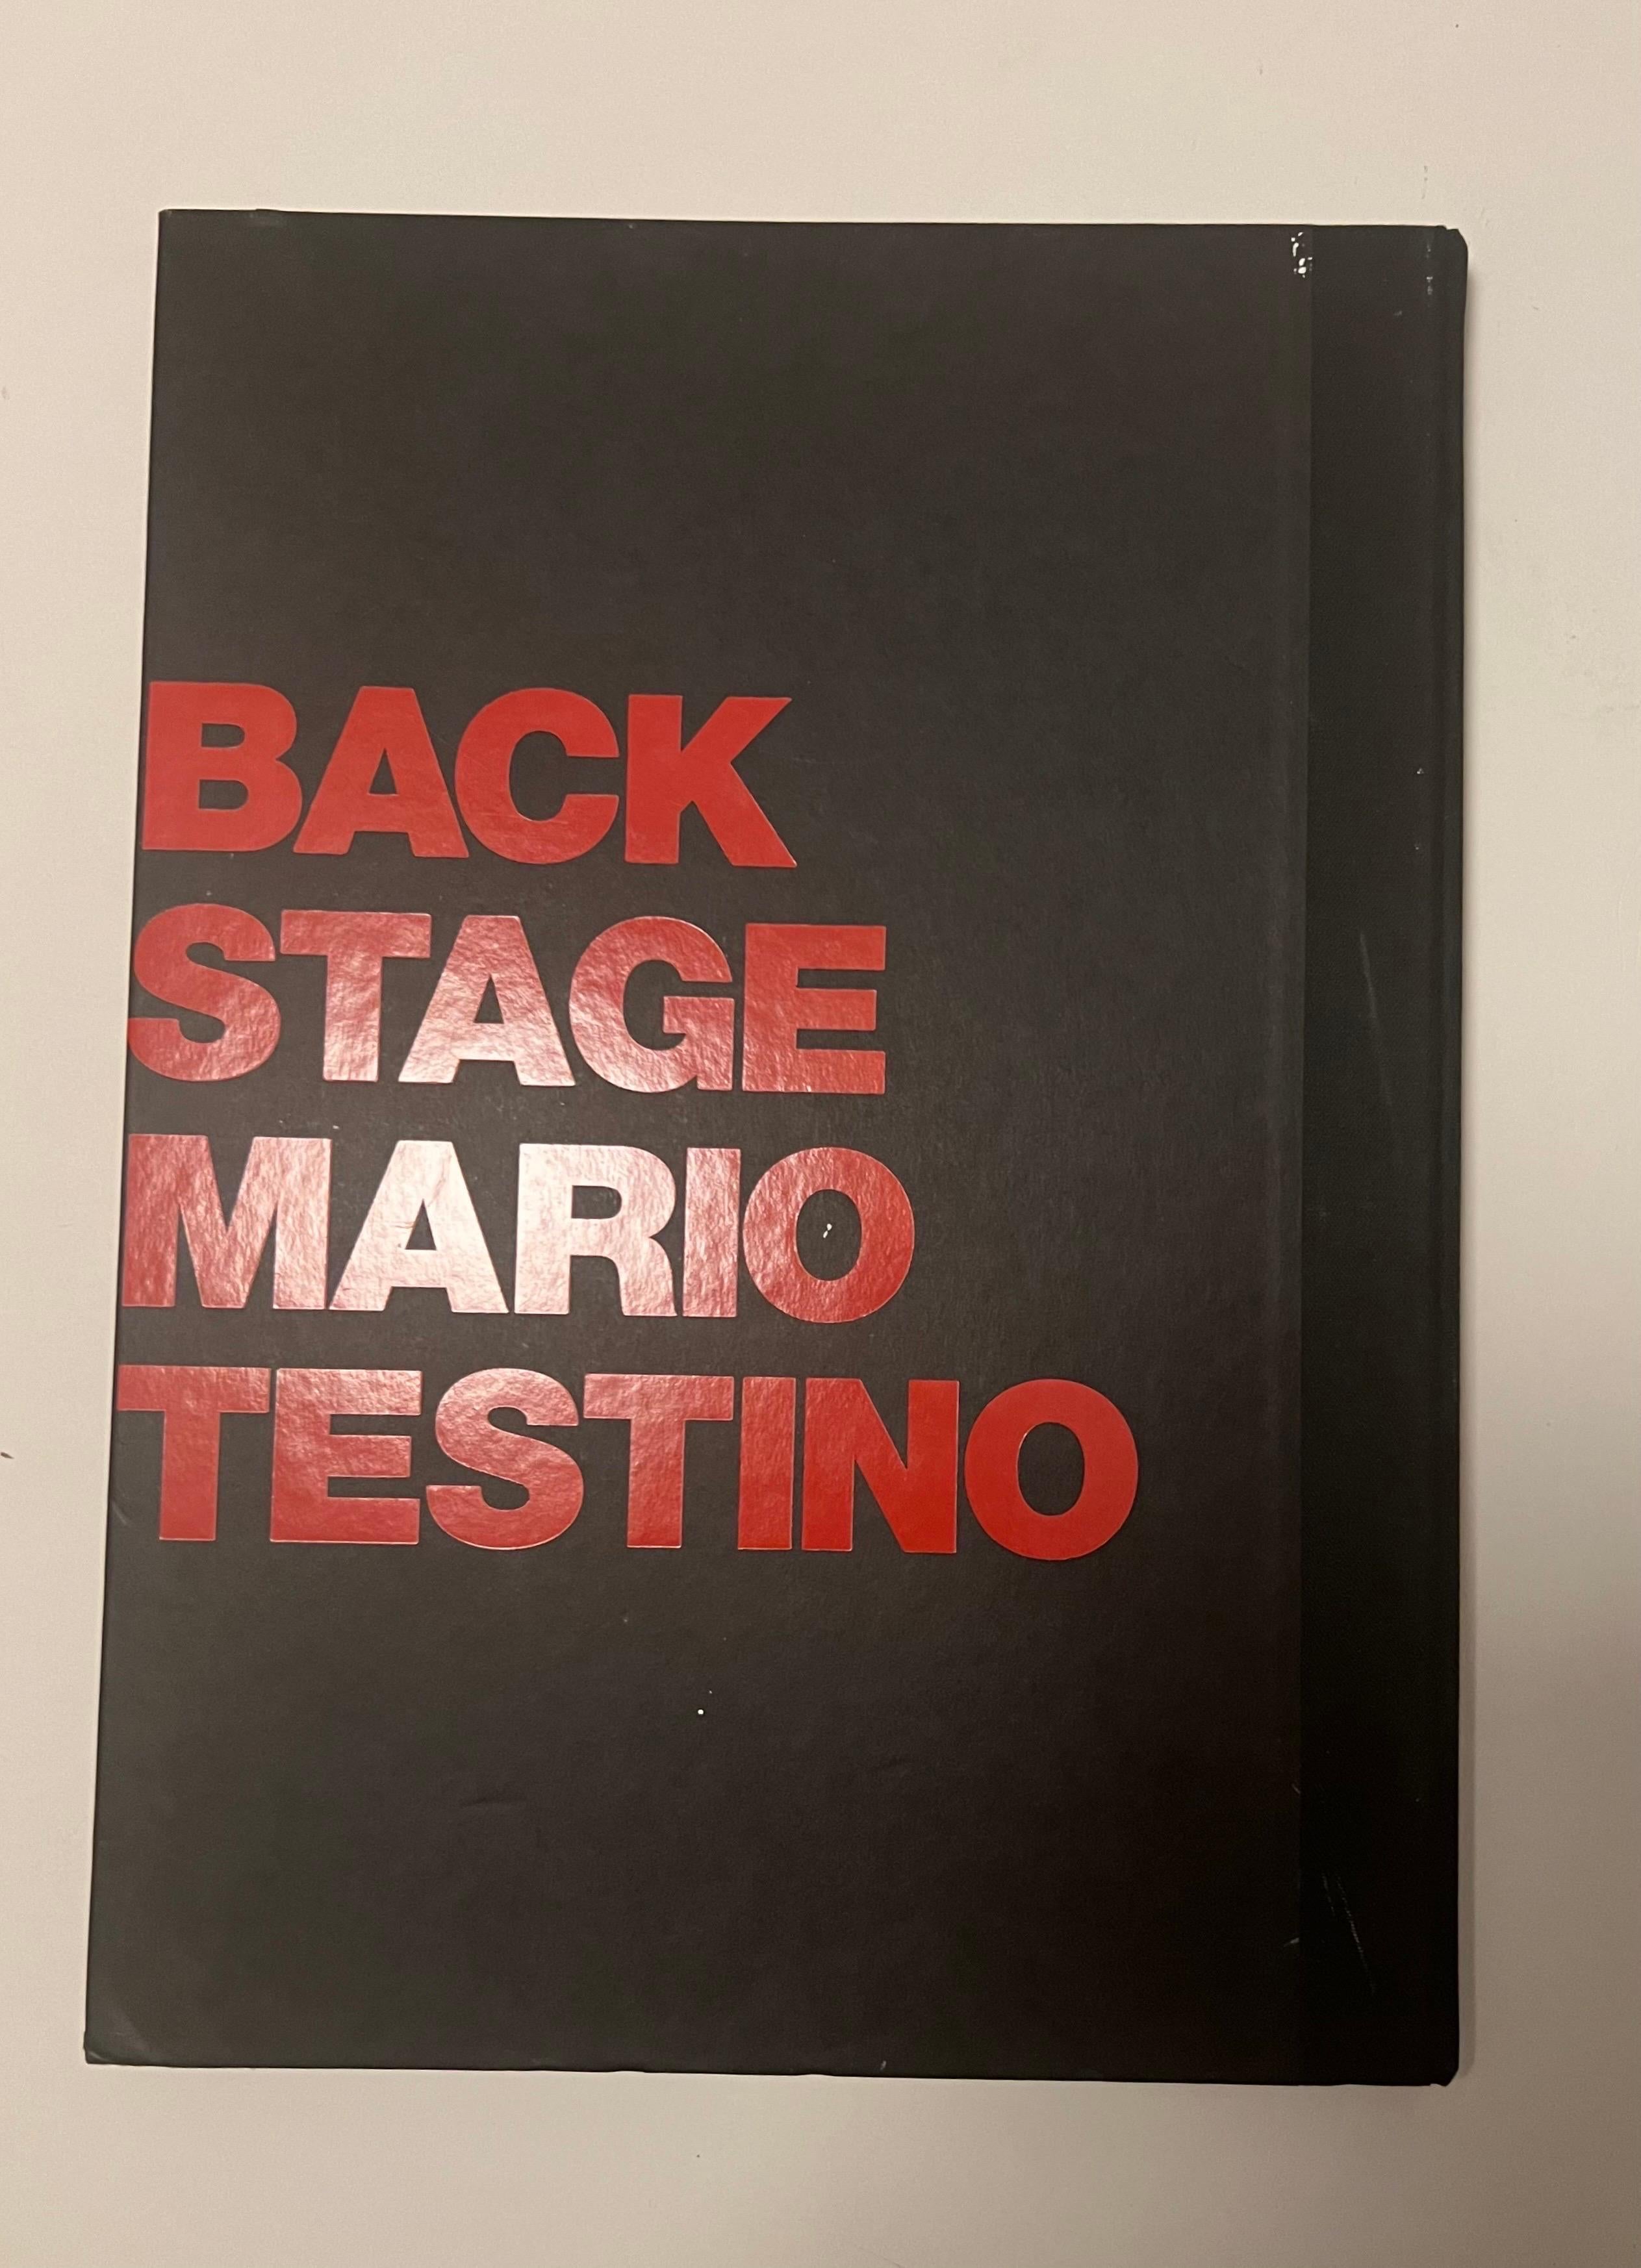 Le livre à couverture rigide de la première édition, Front Row/Backstage, du photographe Mario Testino, est surdimensionné.

Publié en 1999, Front Row/Backstage capture l'excitation et le drame des défilés internationaux à Paris, Londres et Milan.